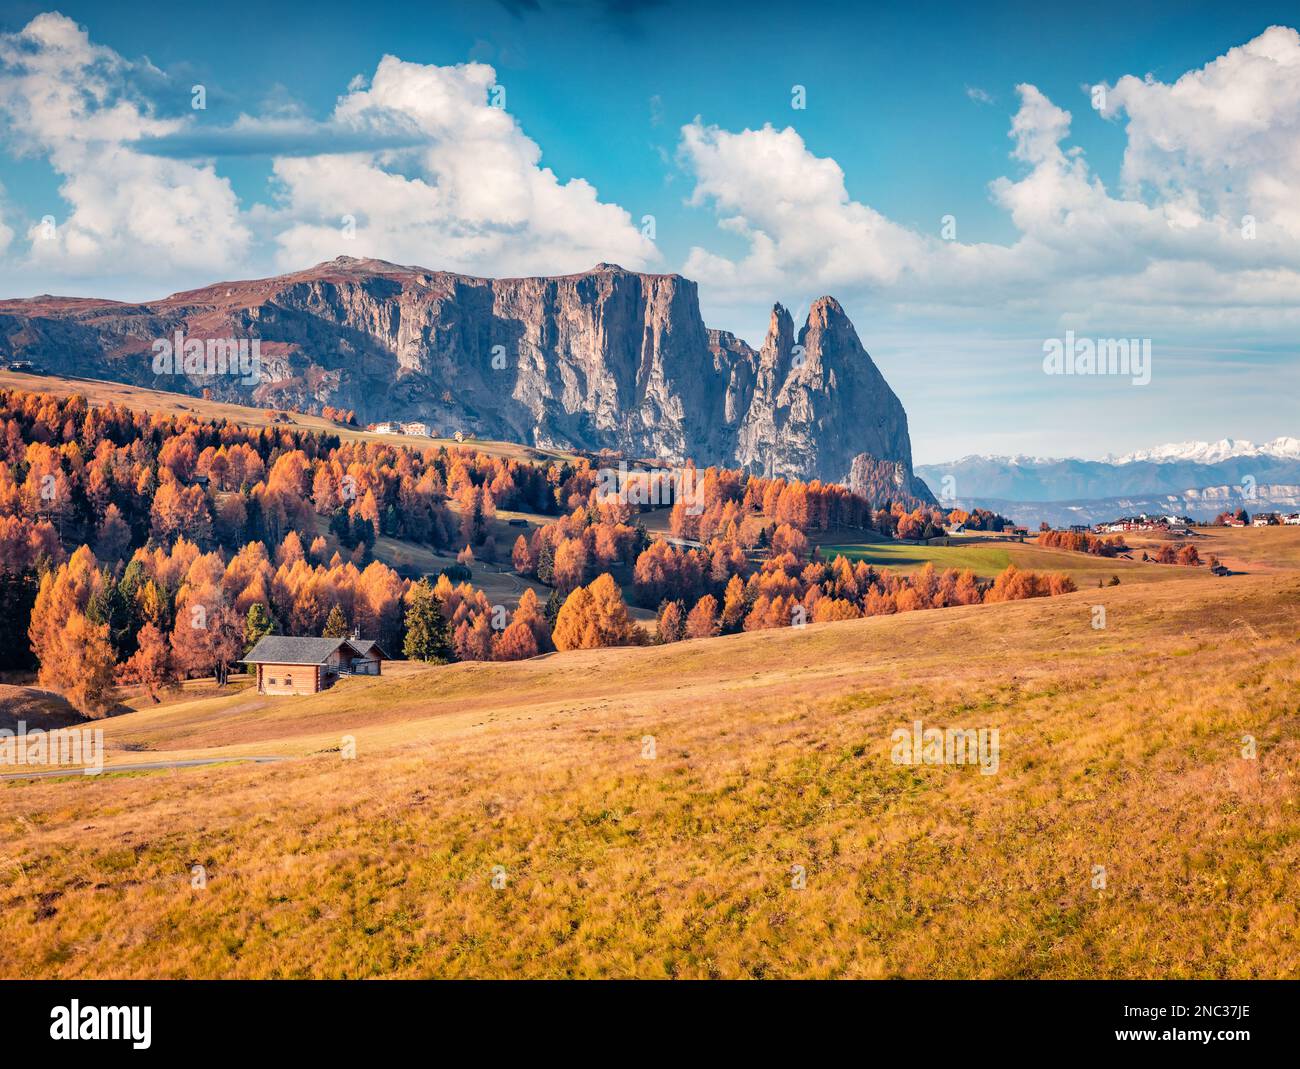 Herrliche Herbstszene des Dorfes Alpe di Siusi mit wunderschönen gelben Lärchen und dem Rosengarten-Gipfel im Hintergrund. Fantastischer Blick auf Dolomi am Vormittag Stockfoto